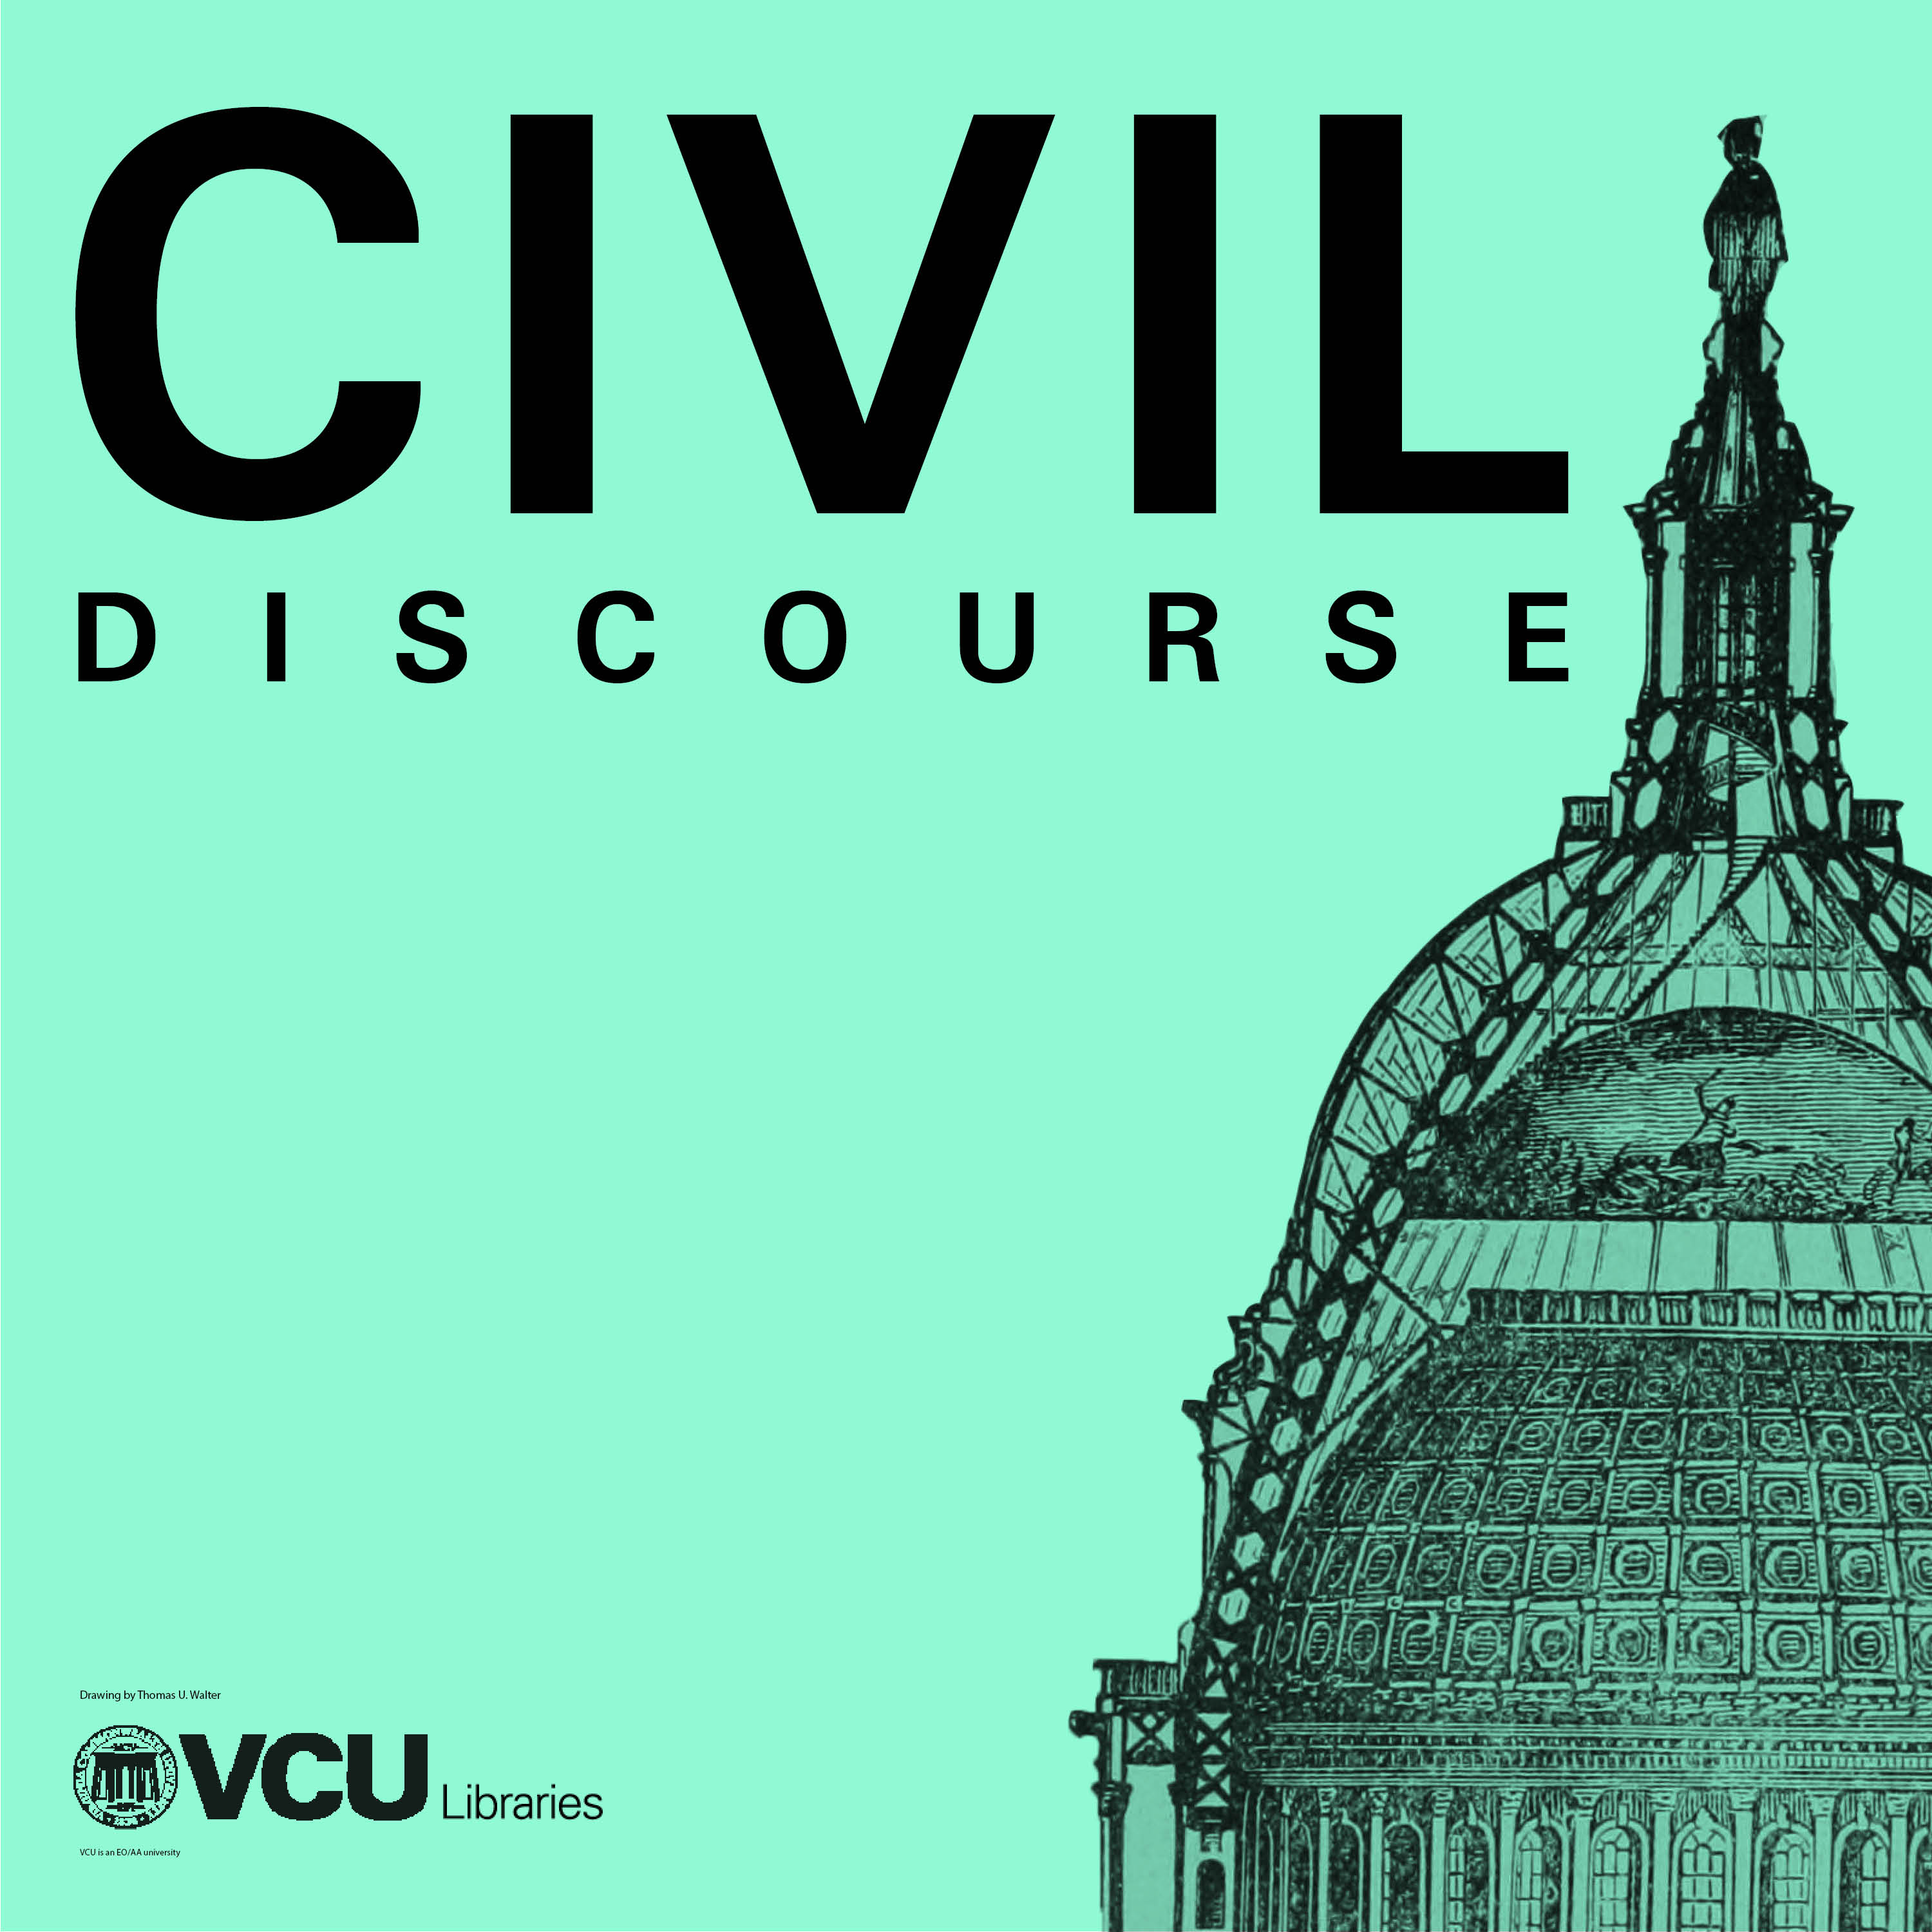 Civil Discourse forum with VCU Poli Sci Experts